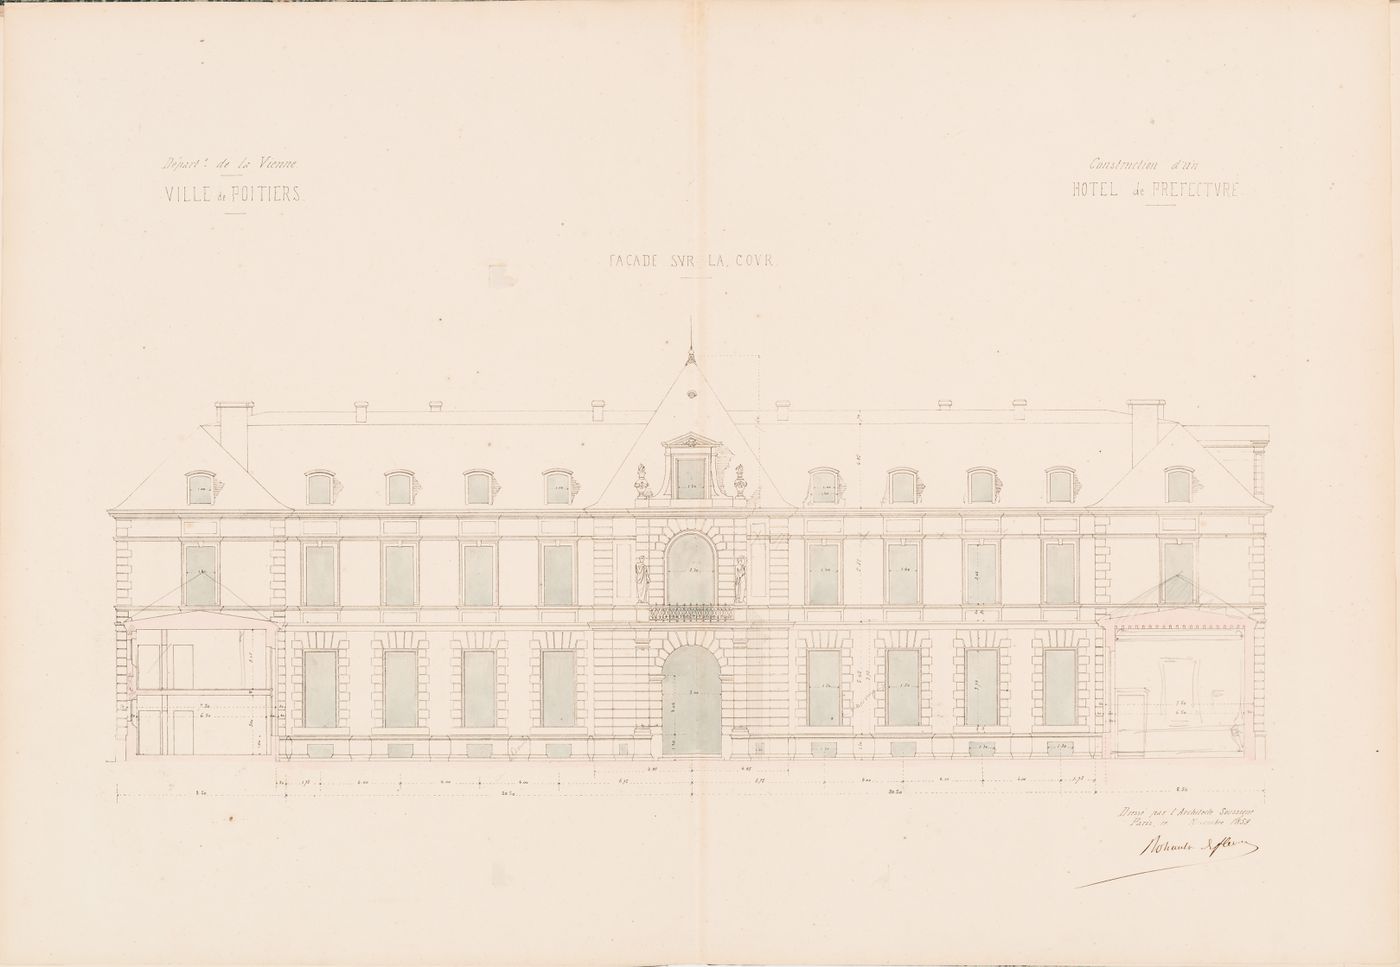 Project for a Hôtel de préfecture, Poitiers: Elevation for the principal façade for the Hôtel du Préfet